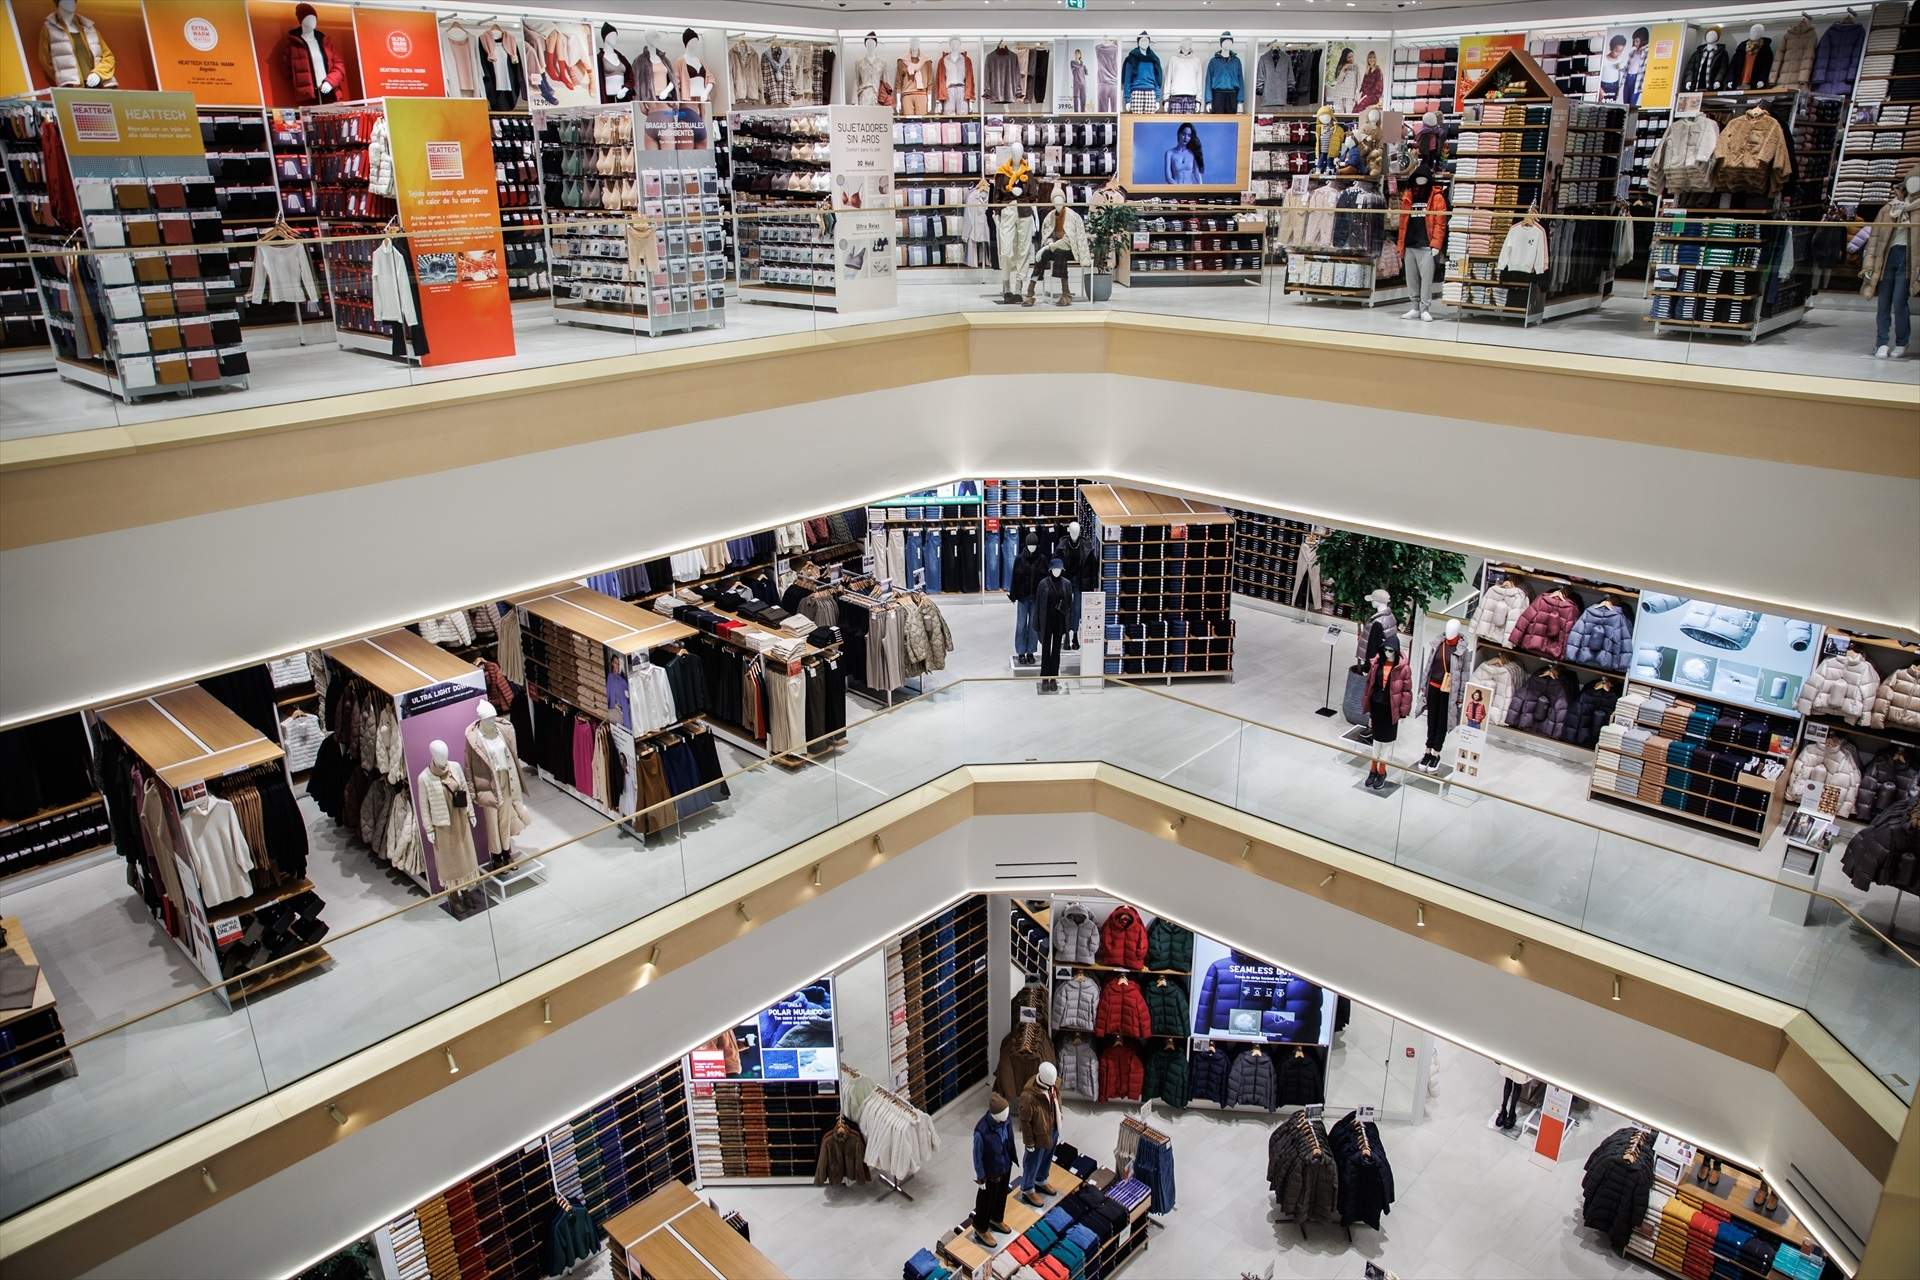 Les botigues de moda registren un 18% més afluència que la mitjana de sectors